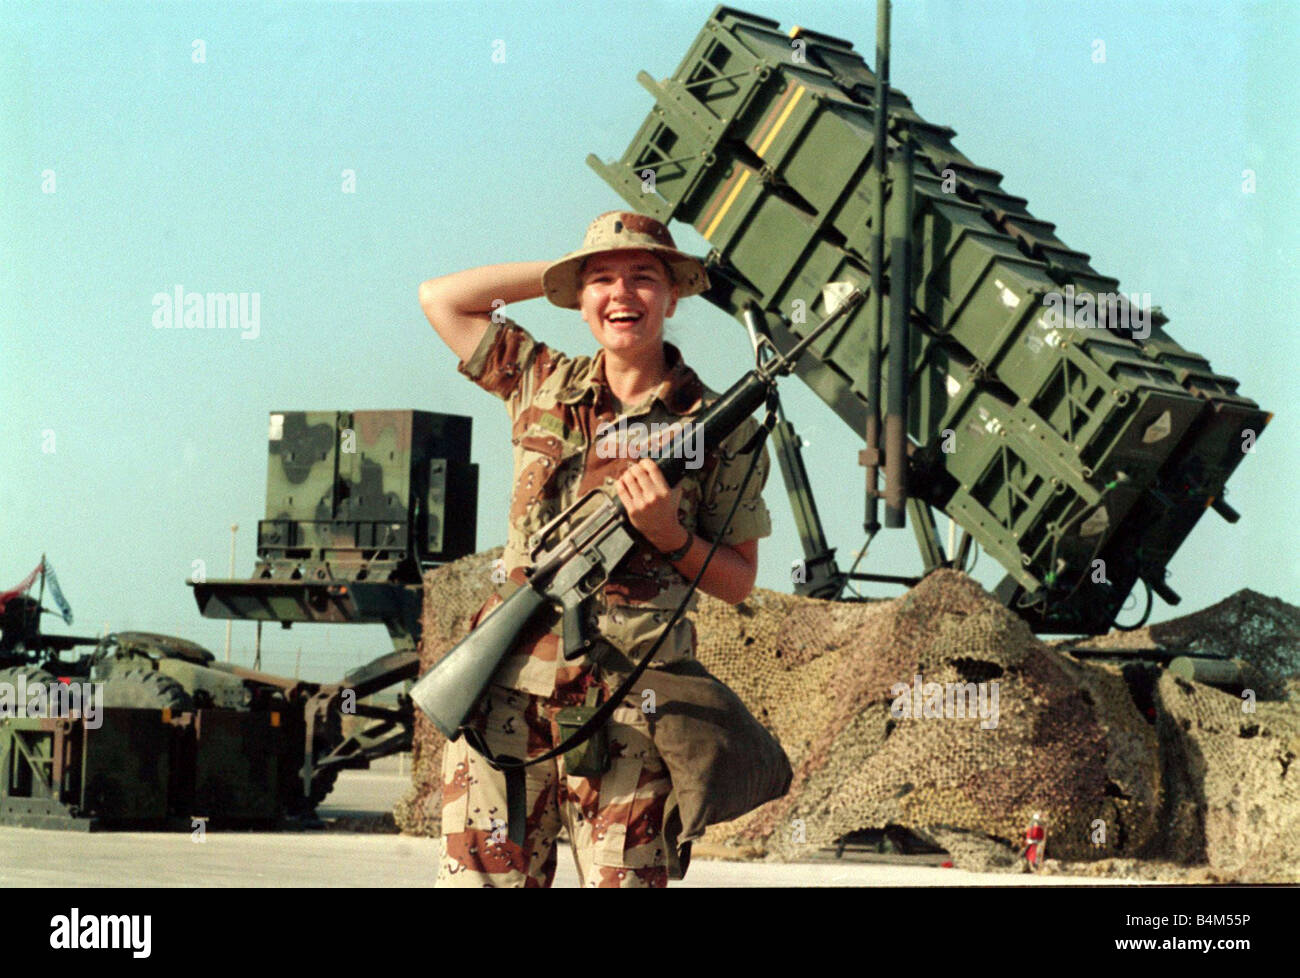 La guerre du Golfe, l'opération "Tempête du désert" Denbridge système de missiles de défense gardée par femme soldat le nouveau visage de la guerre dans les années 90, ce n'est pas seulement les types d'armes qui ont changé dans les armées d'aujourd'hui ni d'ailleurs les uniformes La guerre dans les années 90 a vu les femmes prenant un rôle de première ligne beaucoup plus ce soldat américain a été chargé de la défense d'un système de missiles Patriot mais ce n était pas seulement les Américains qui ont décidé de permettre aux femmes de se battre Banque D'Images